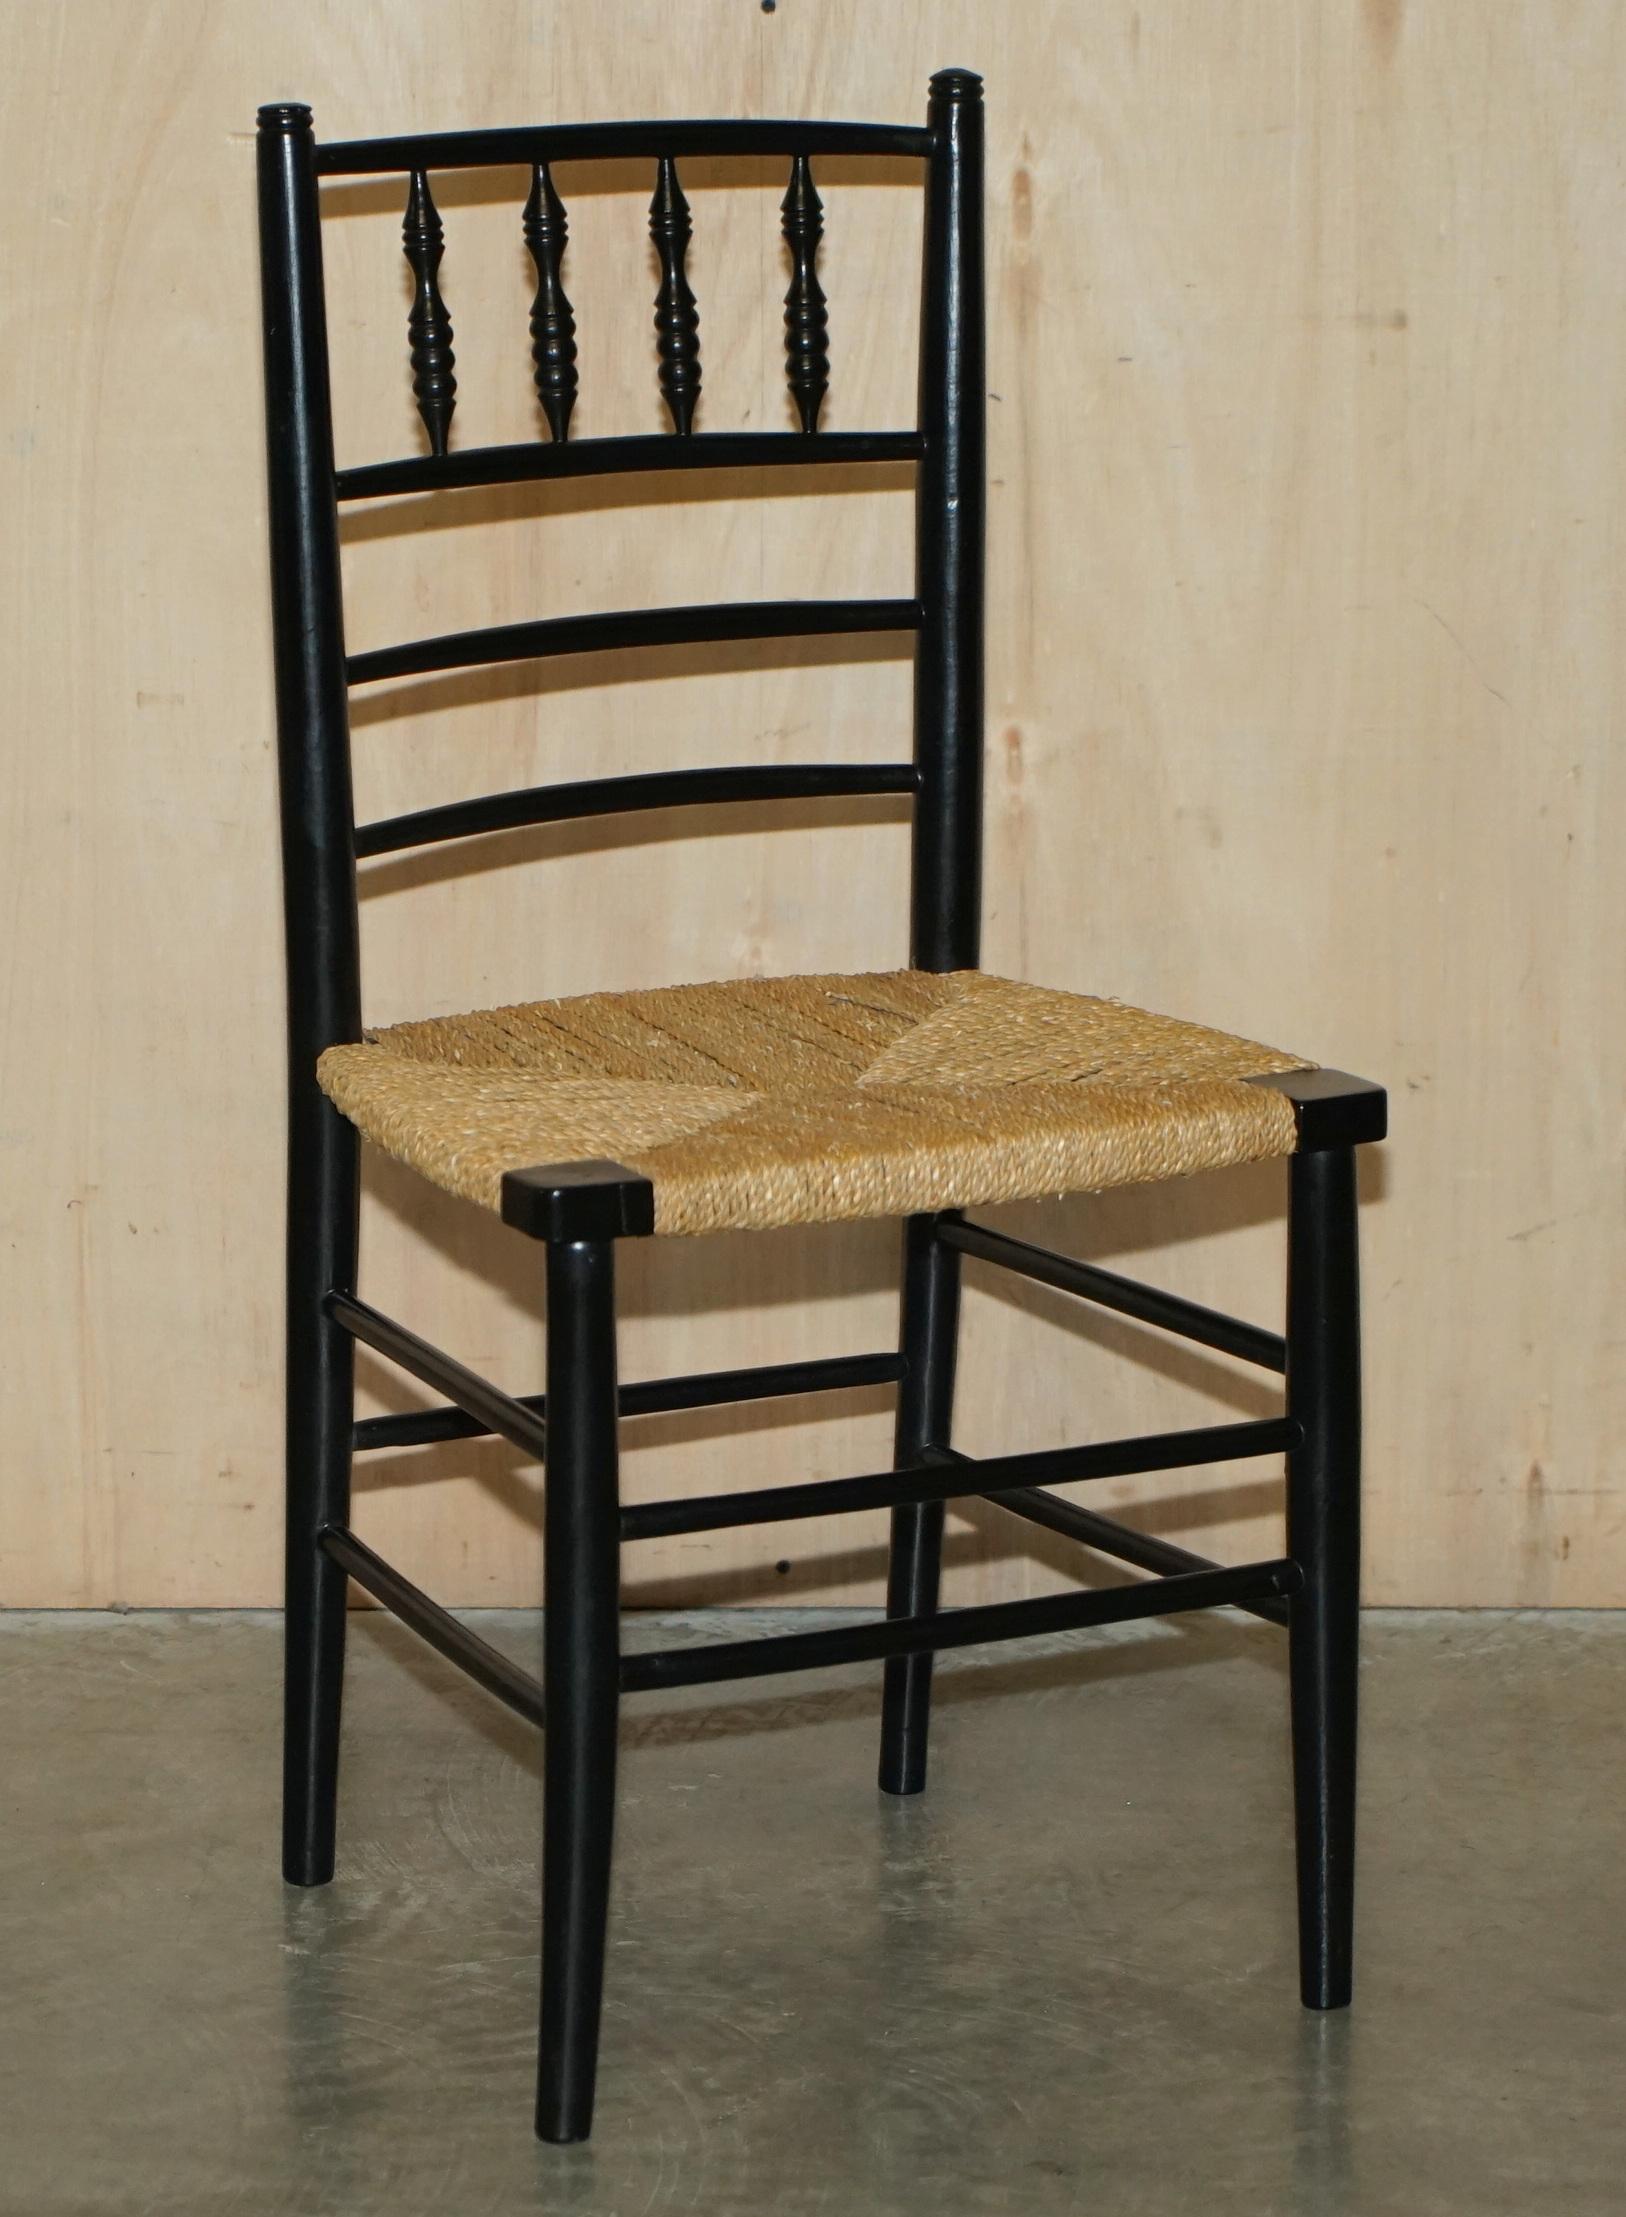 Nous sommes ravis d'offrir à la vente cette paire de chaises William Morris Rush seat Sussex circa 1870-1880 comme vu dans le Victorian and Albert museum.

L'histoire Cette chaise a été nommée d'après une chaise de campagne trouvée dans le Sussex,